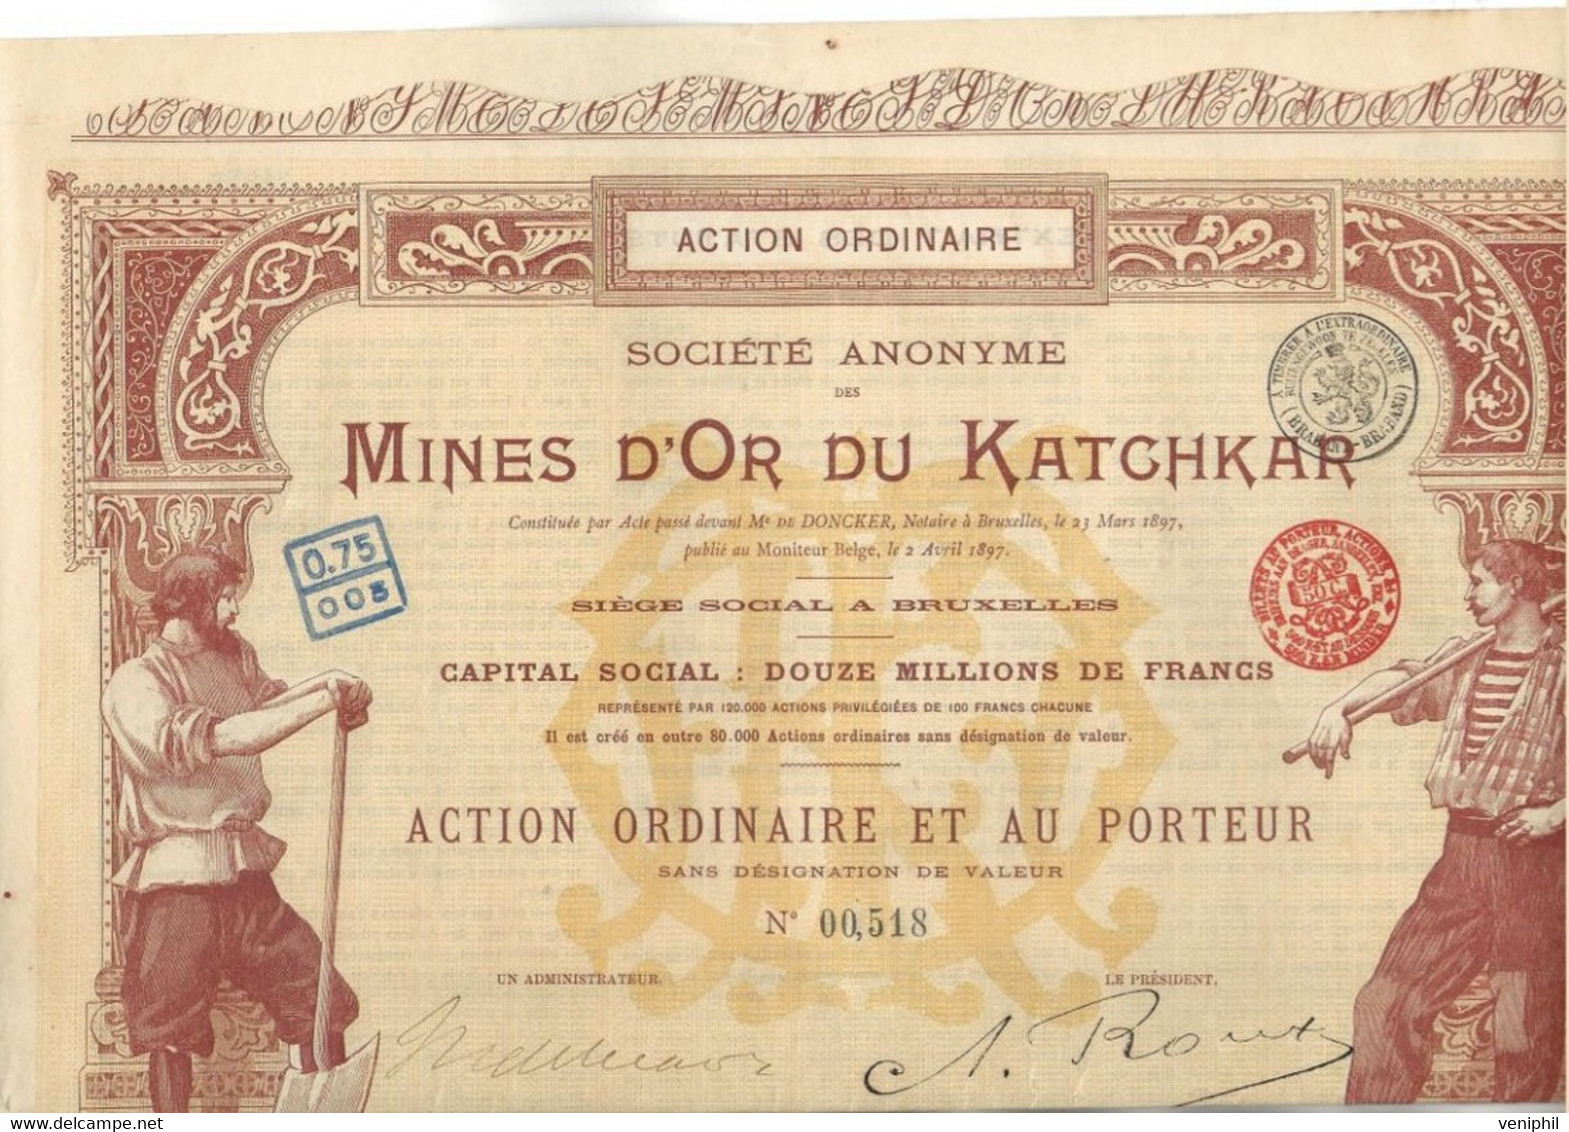 MINES D'OR DU KATCHKAR (ARMENIE RUSSIE ) TITRE DE CINQ ACTIONS ORDINAIRES -ANNEE 1897 - Bergbau